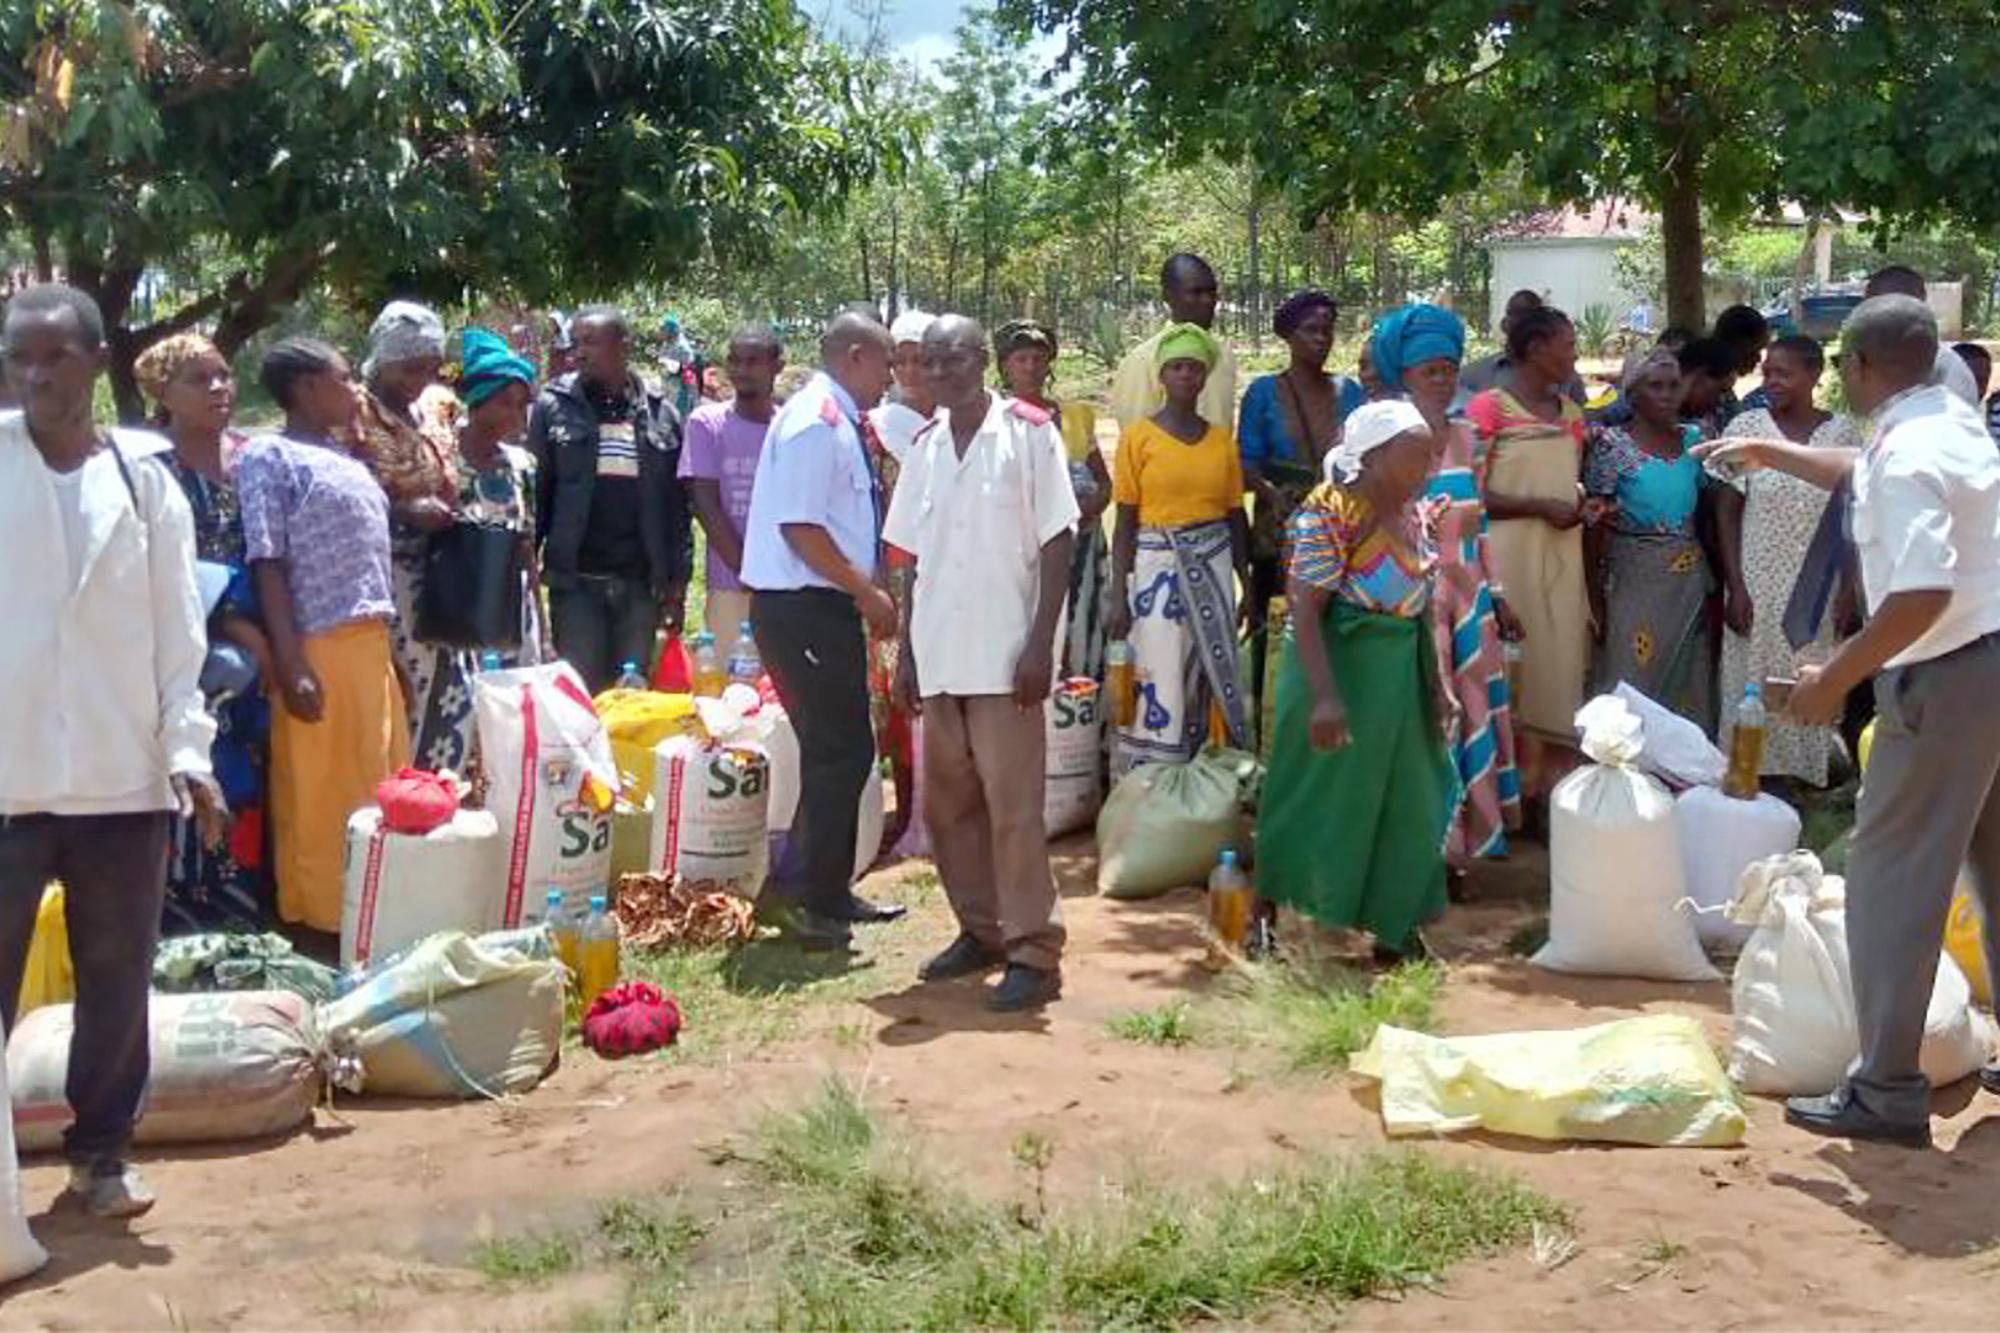 Frälsningsarméns personal i Tanzania delar ut mat från säckar till en grupp människor.